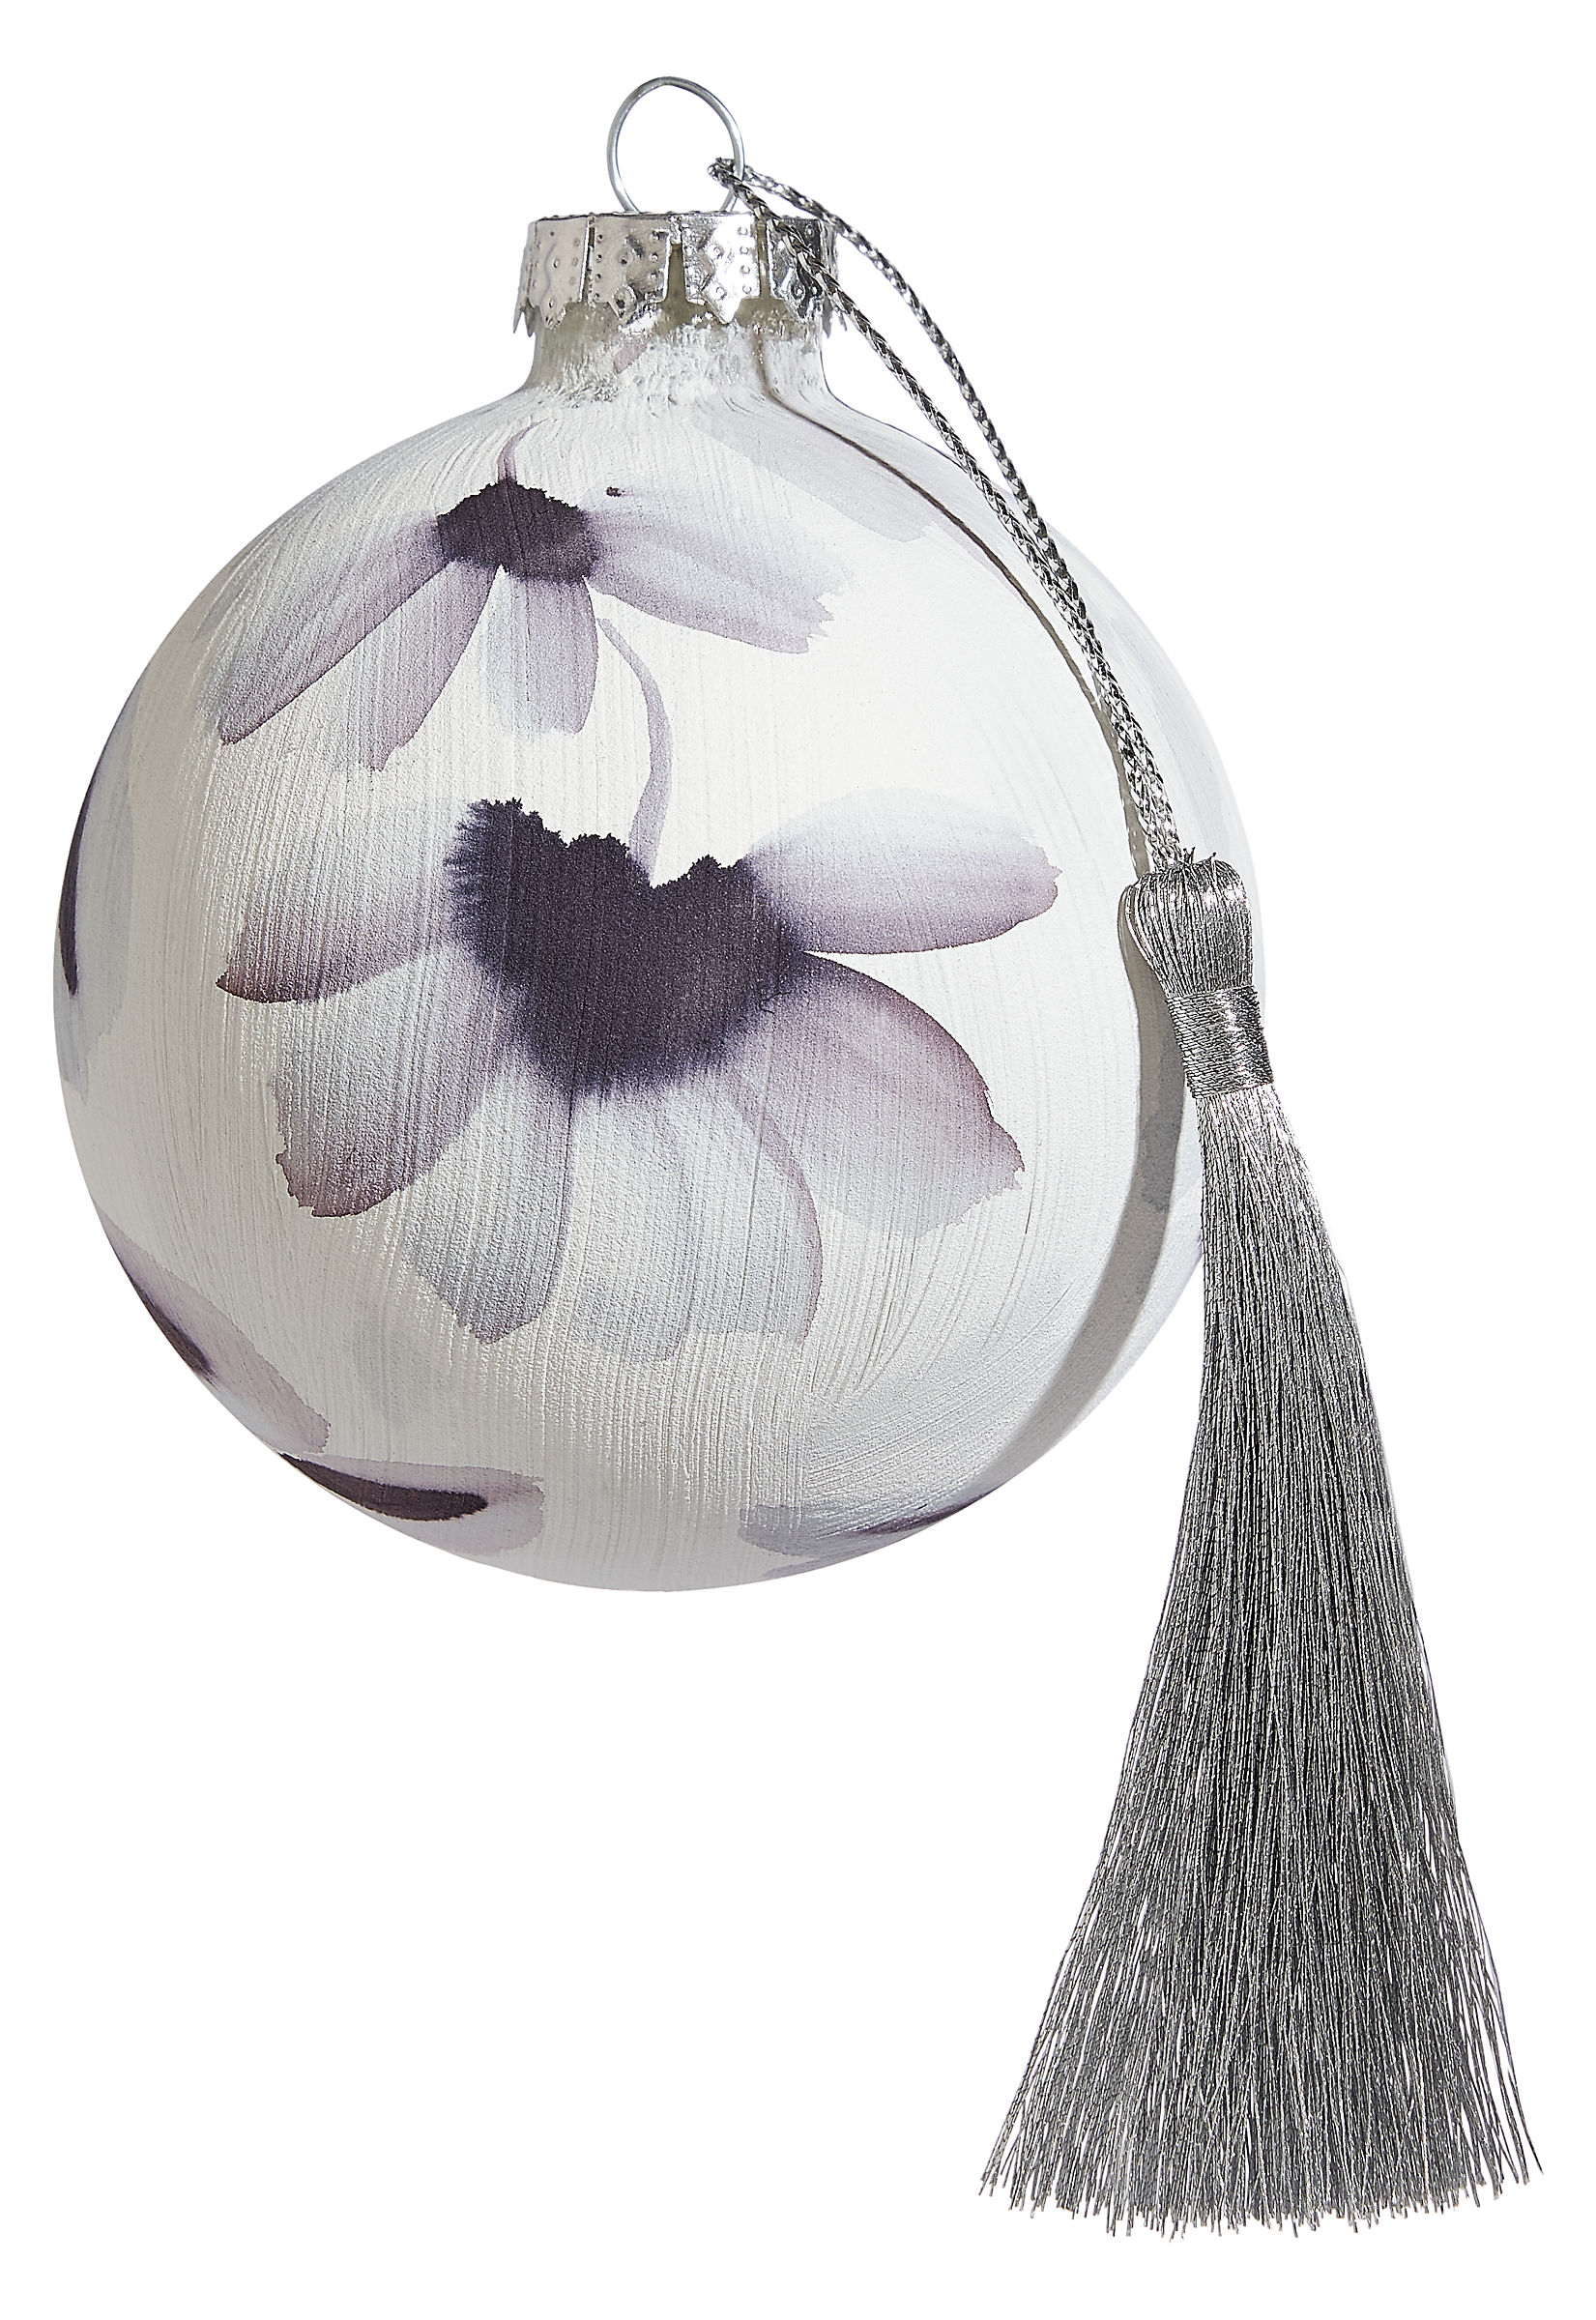 Suyao Tian Ornament in Grey